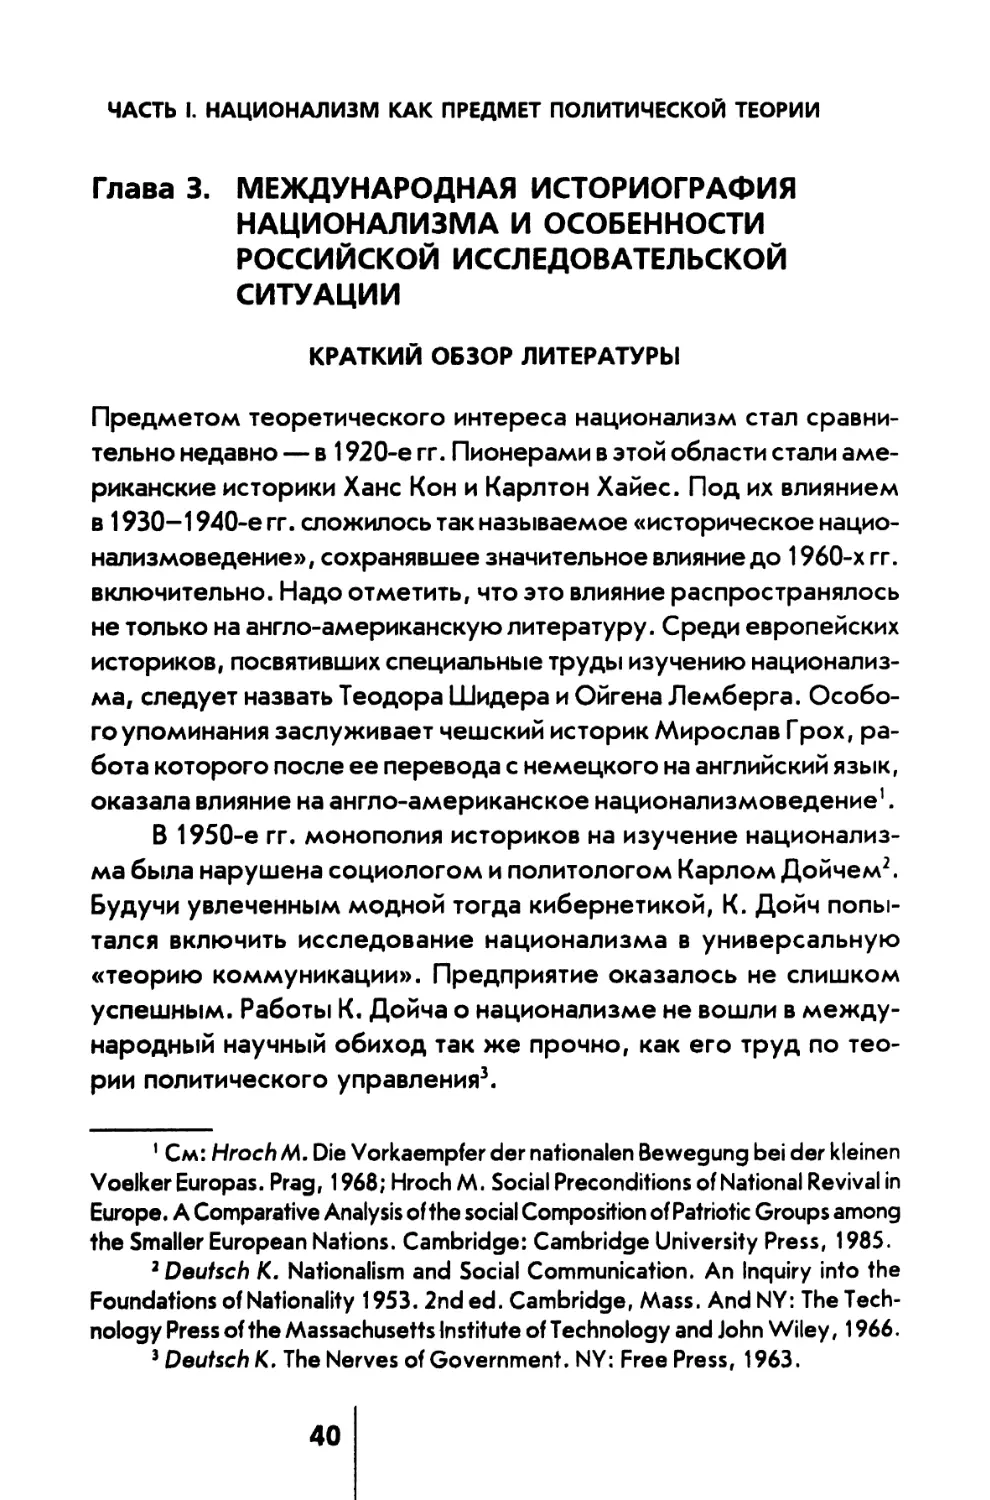 Глава 3. Международная историография национализма и особенности российской исследовательской ситуации